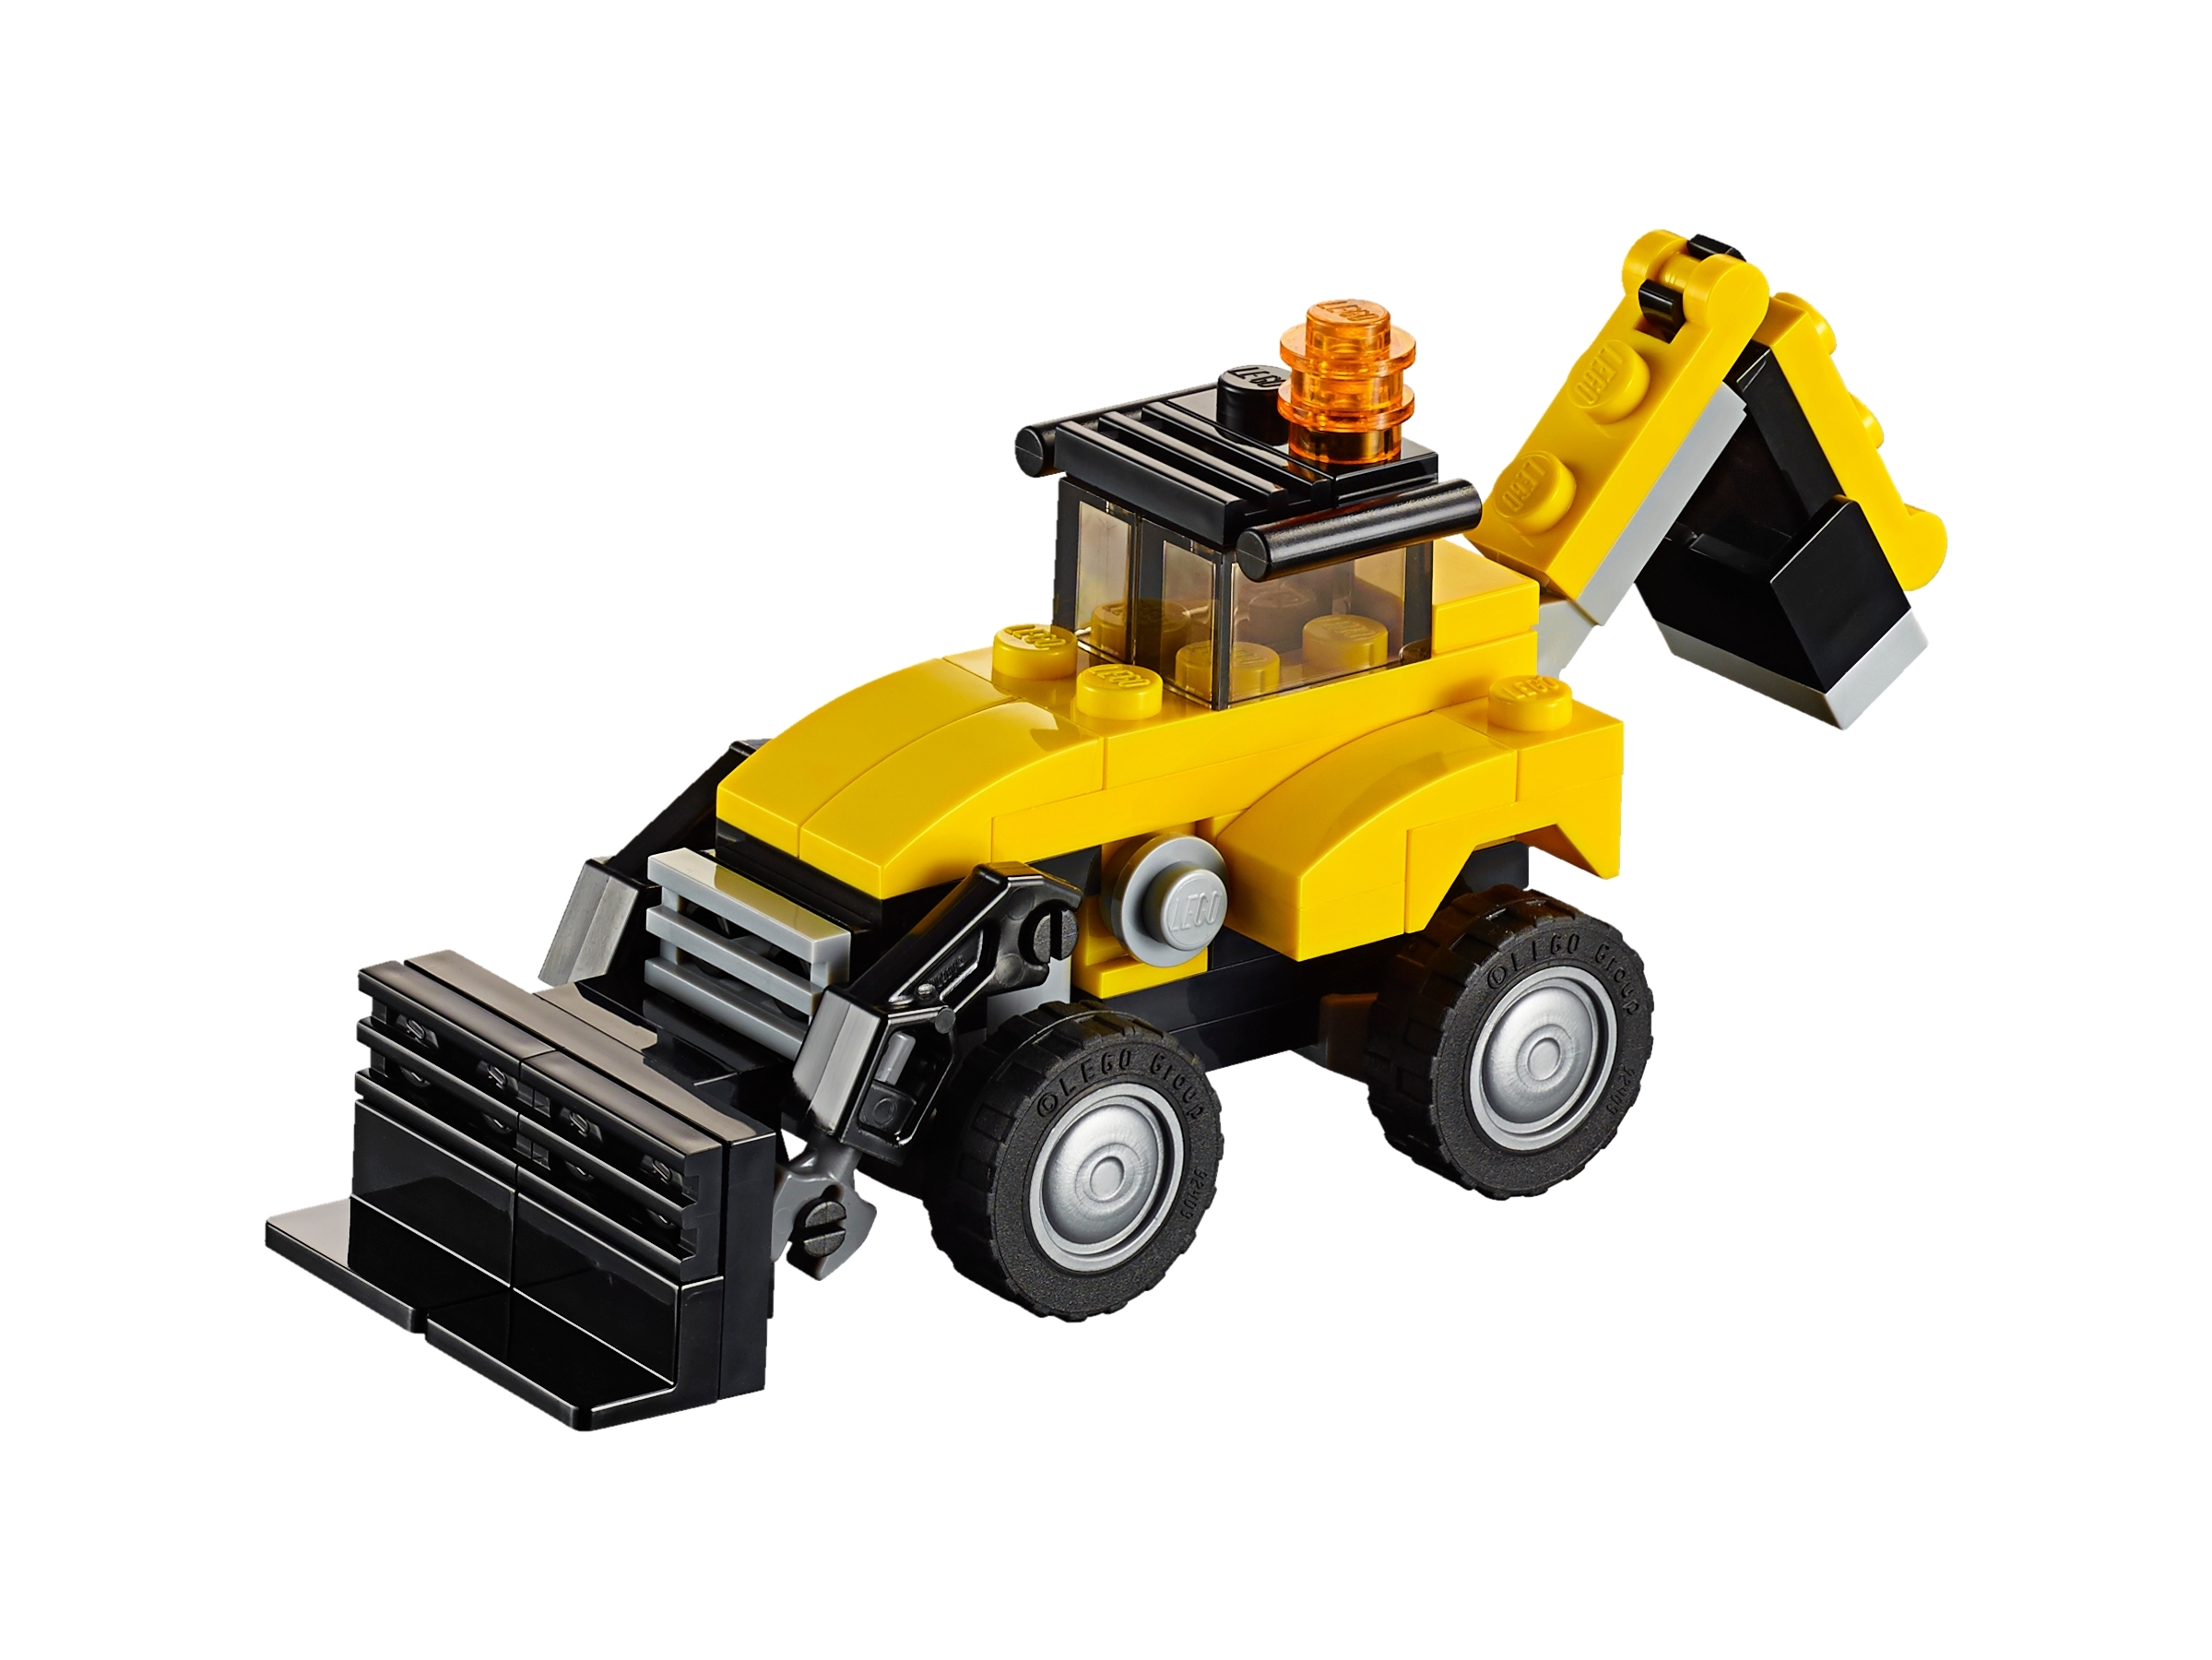 Kit Lego Mecano Vehiculo Aplanador Construcción Metal 141pcs